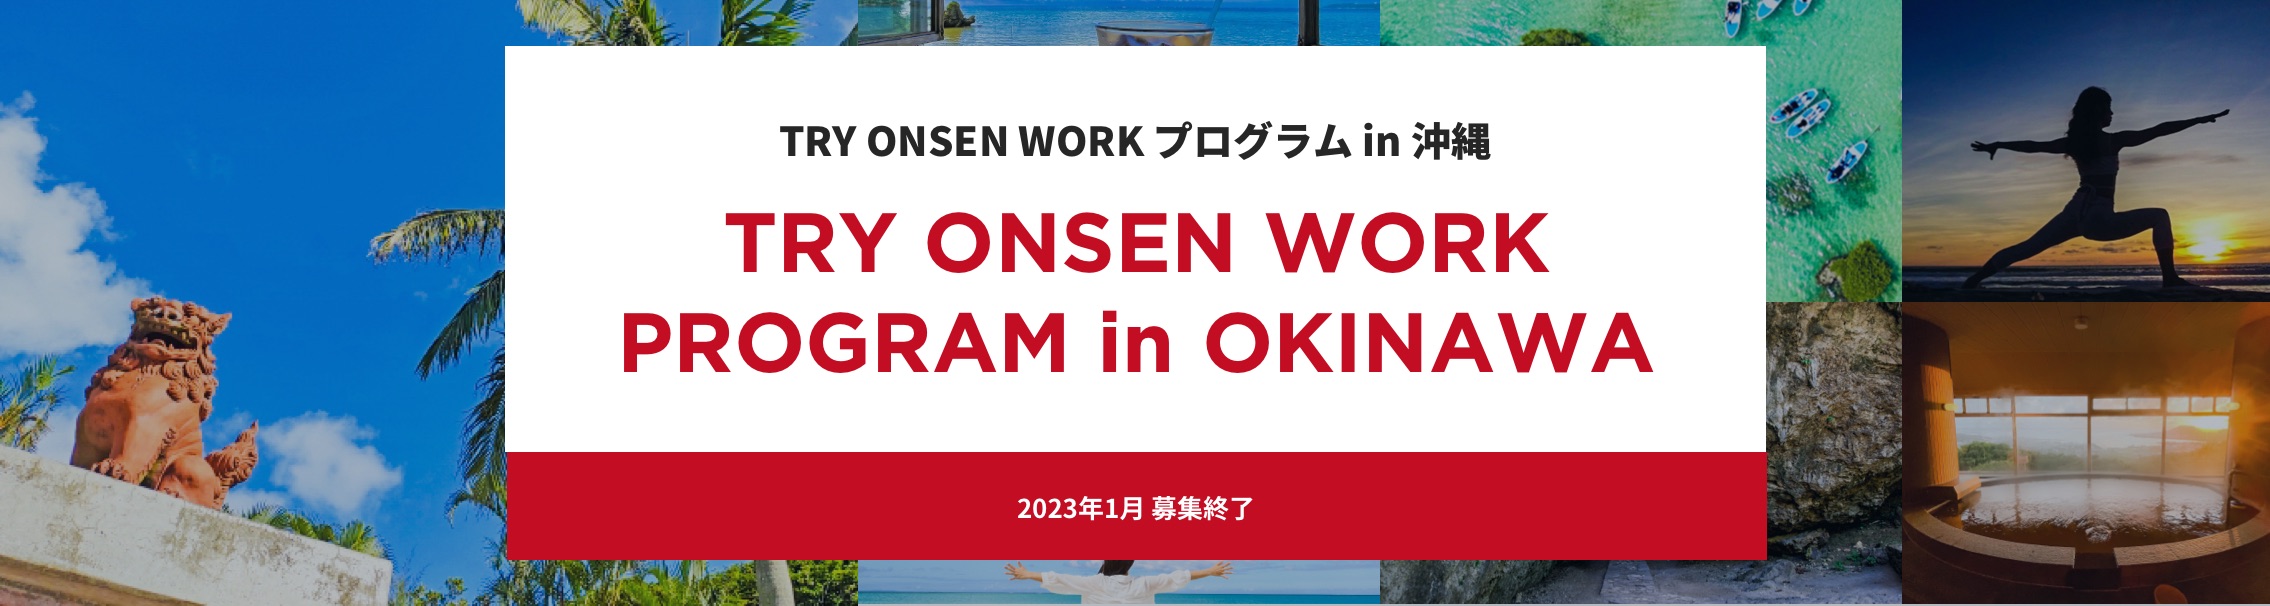 TRY ONSEN WORK in Wellness OKINAWA